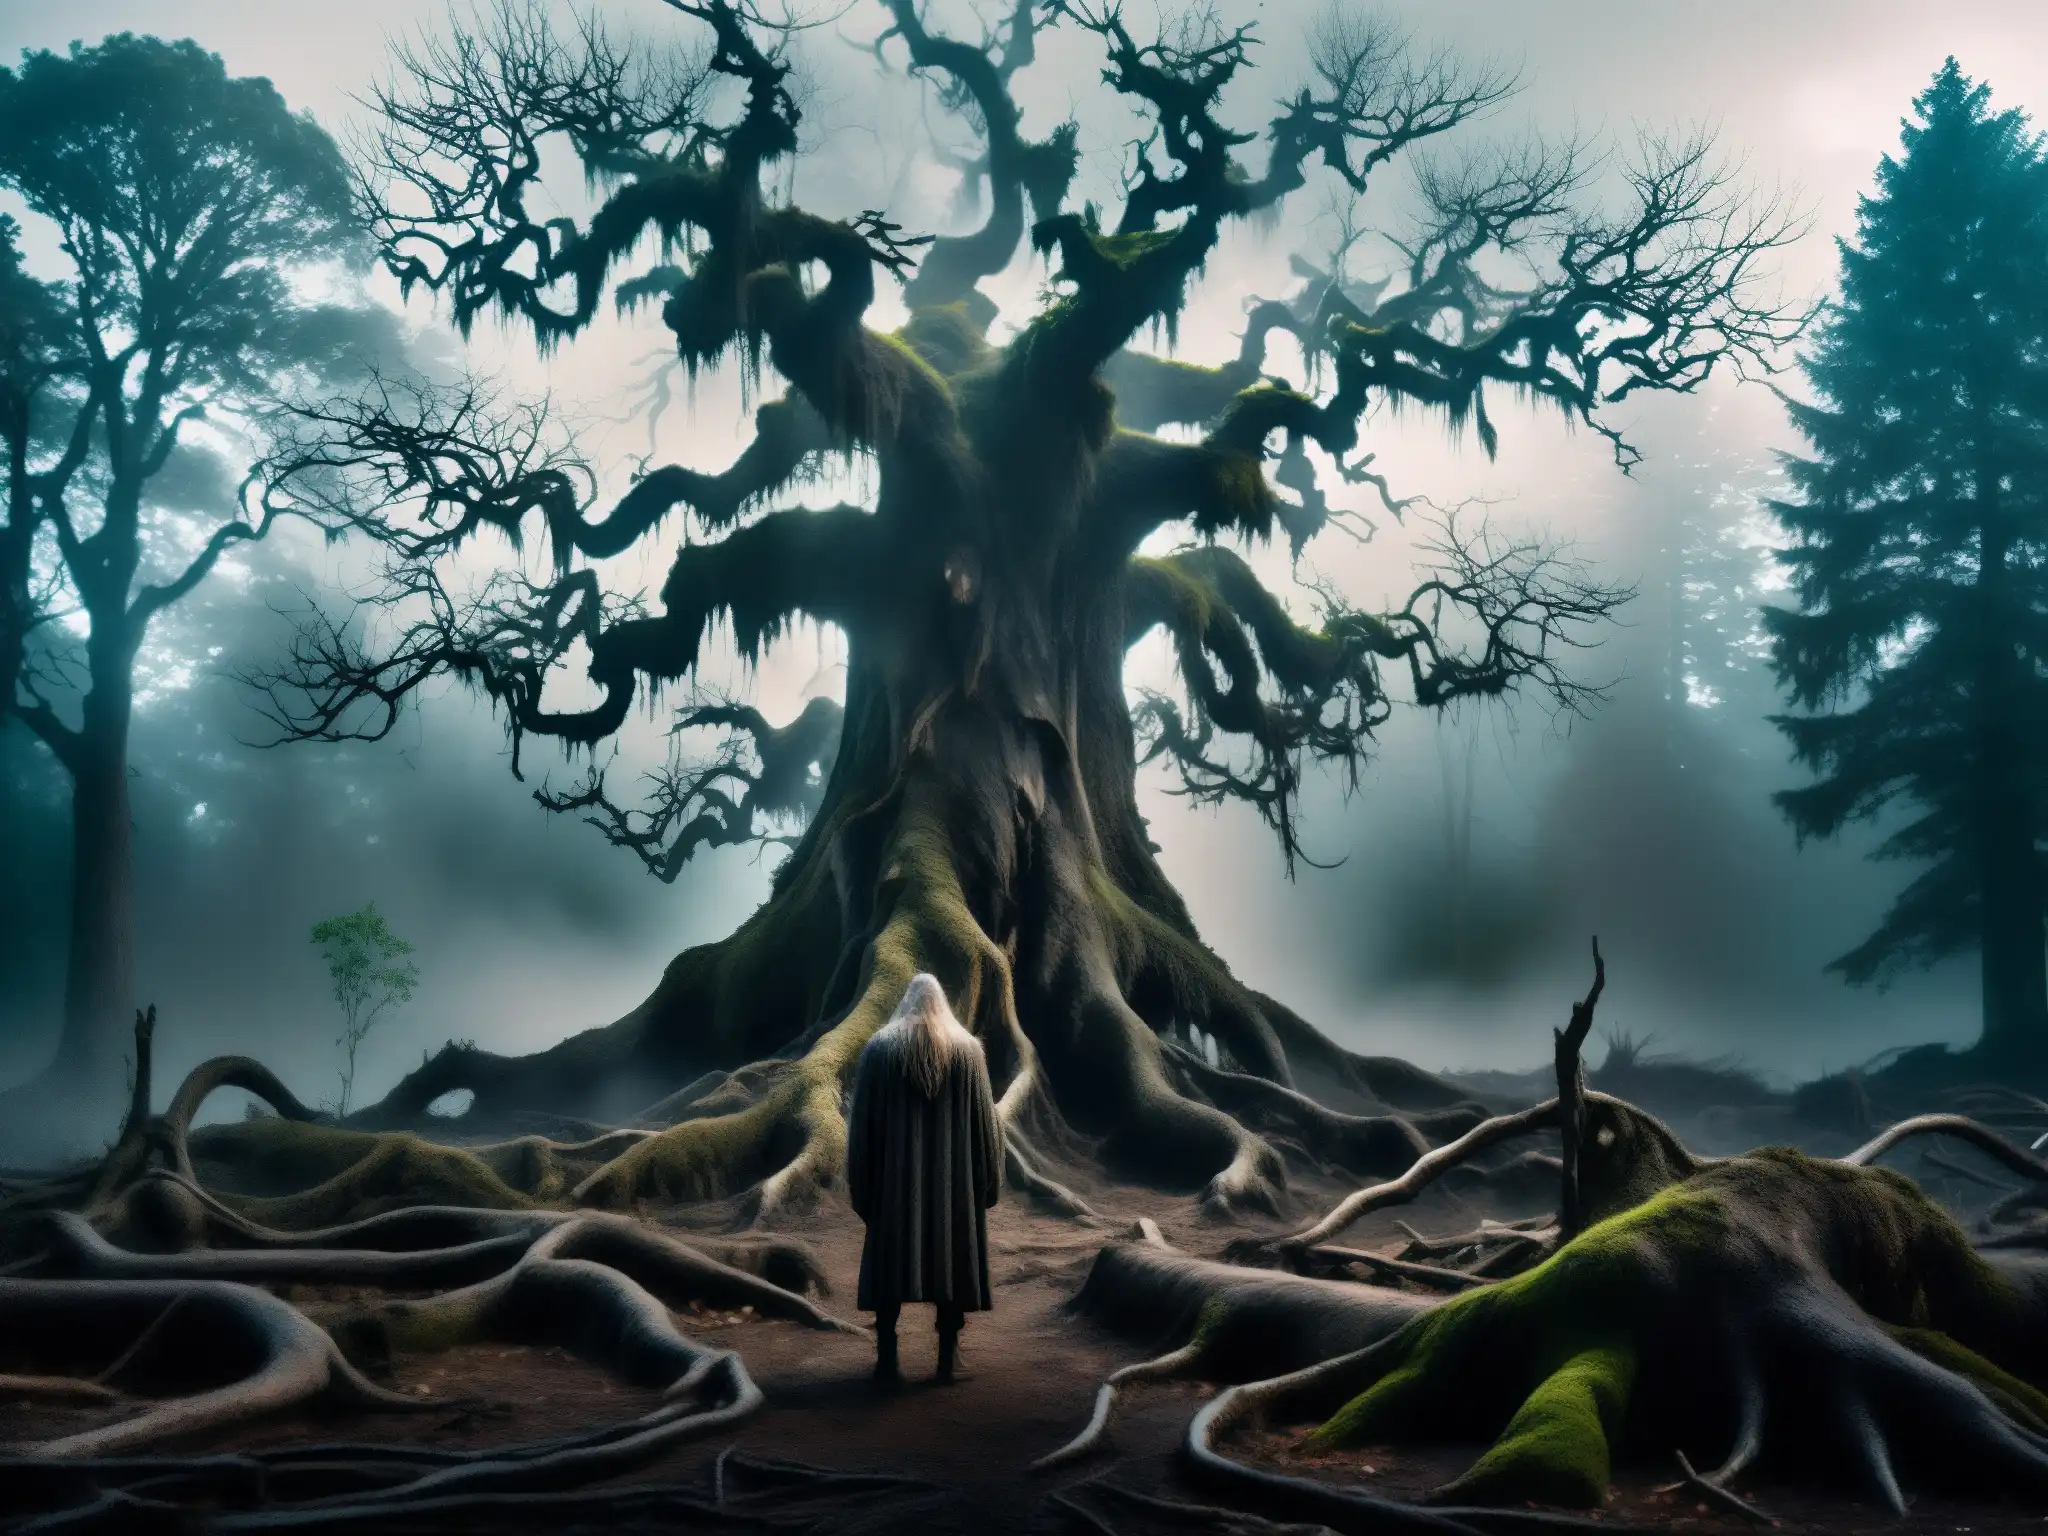 Imagen de un bosque tenebroso con un espíritu vengativo emergiendo, evocando la leyenda de El Guayabo de la Yuca